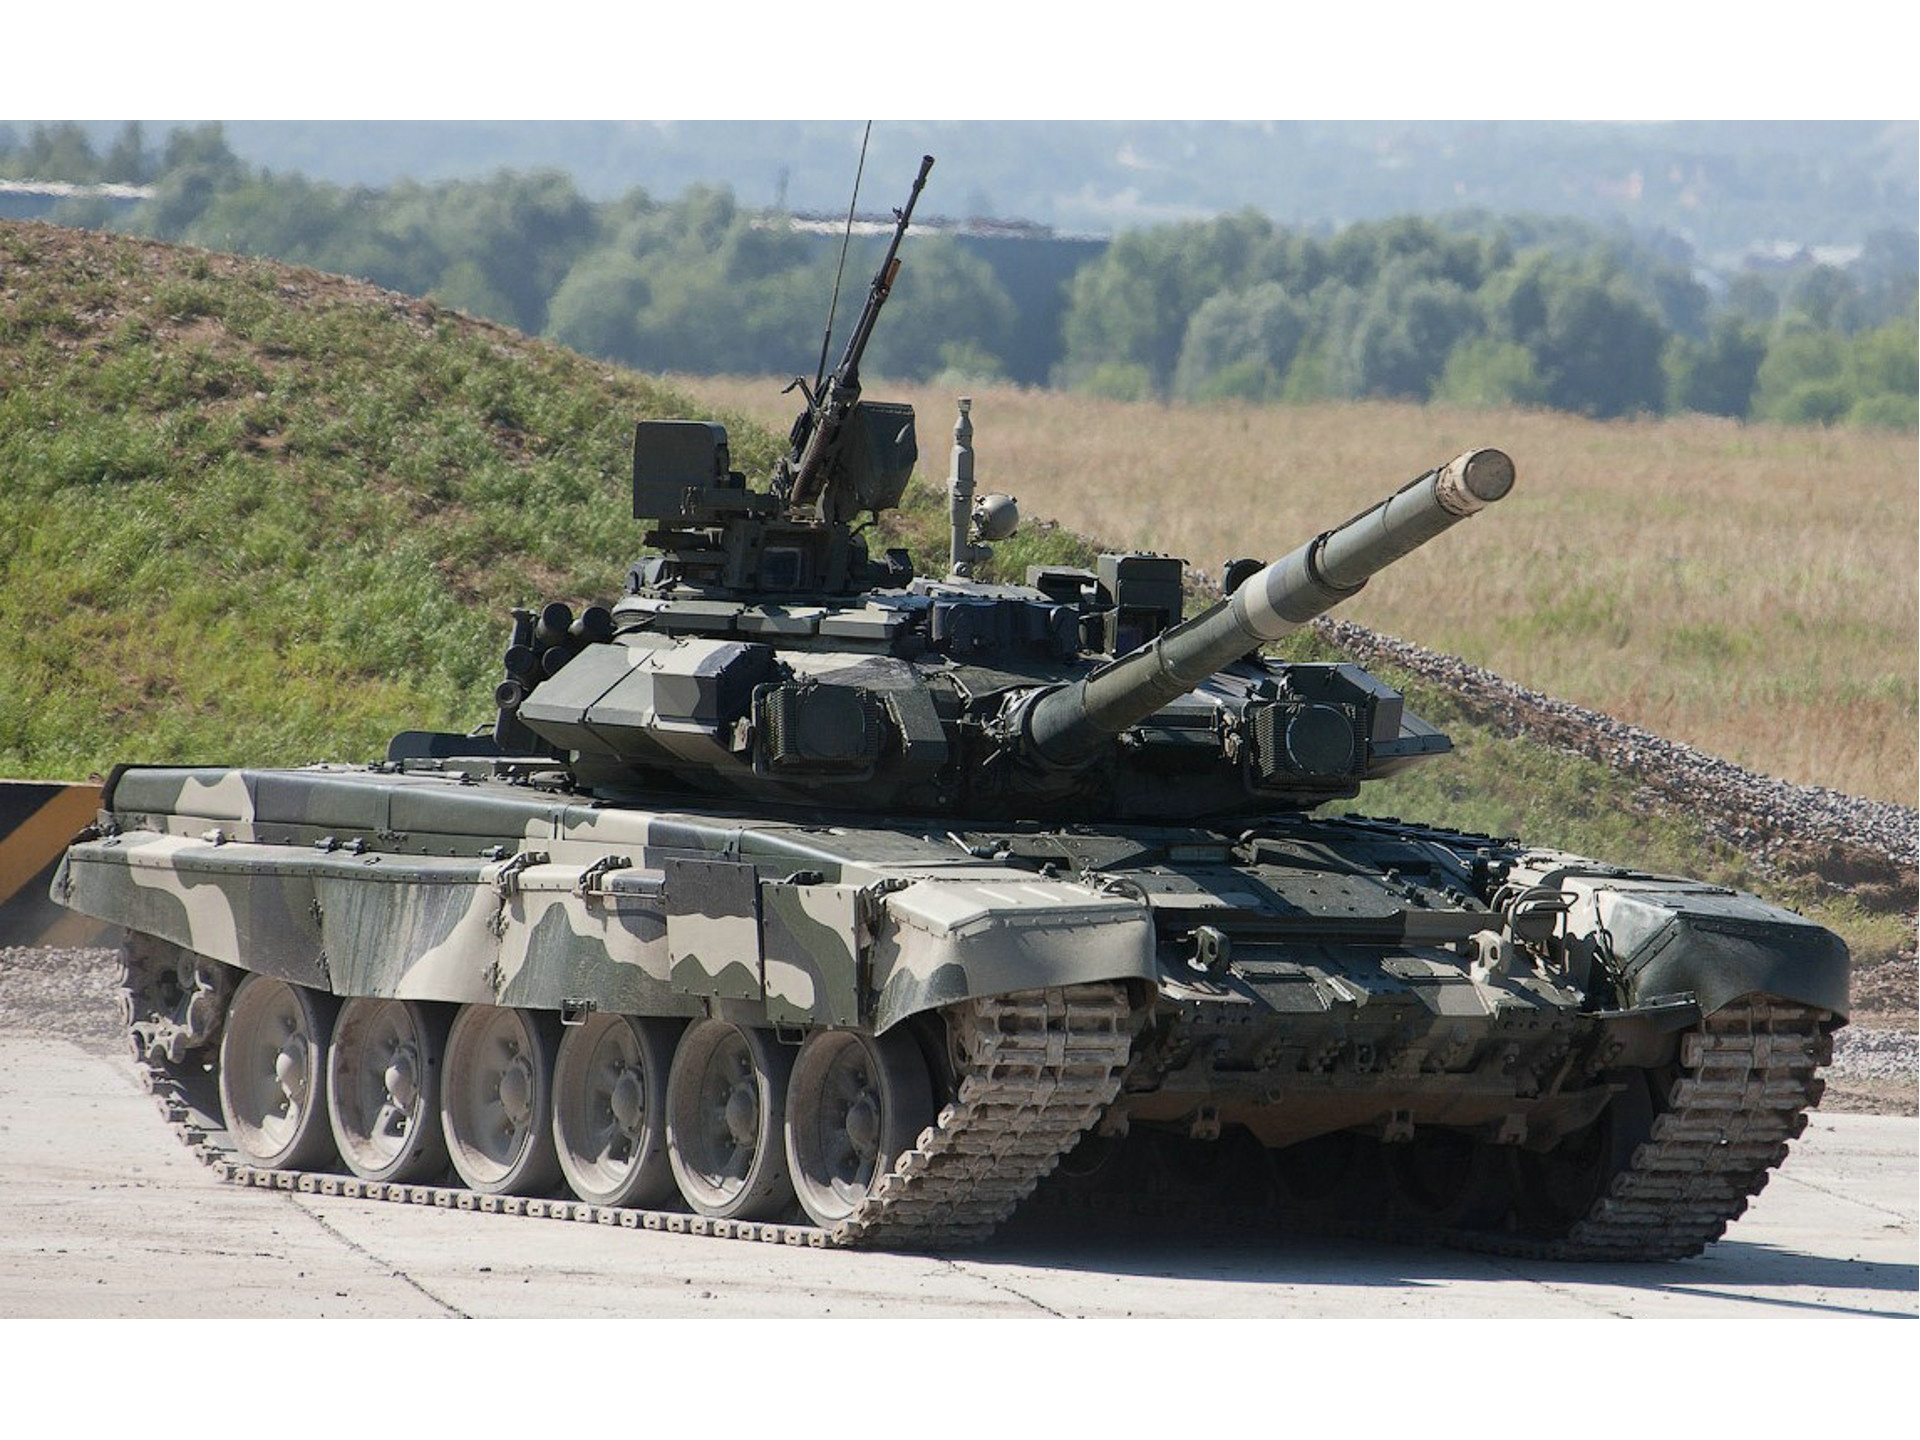 T-90主戰坦克